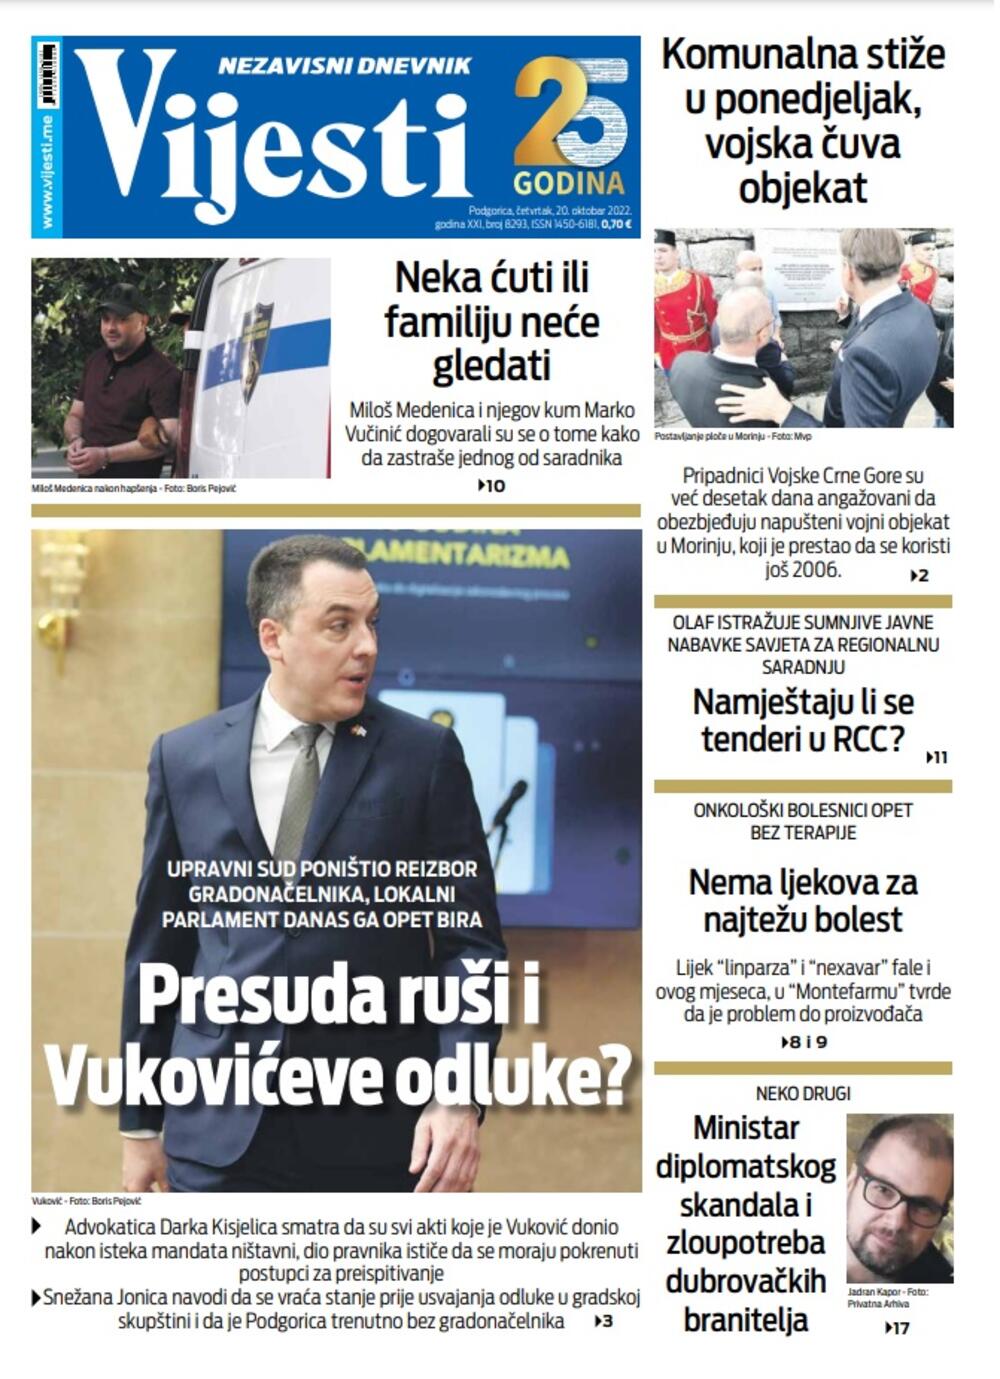 Naslovna strana "Vijesti" za 20. oktobar 2022. godine, Foto: Vijesti